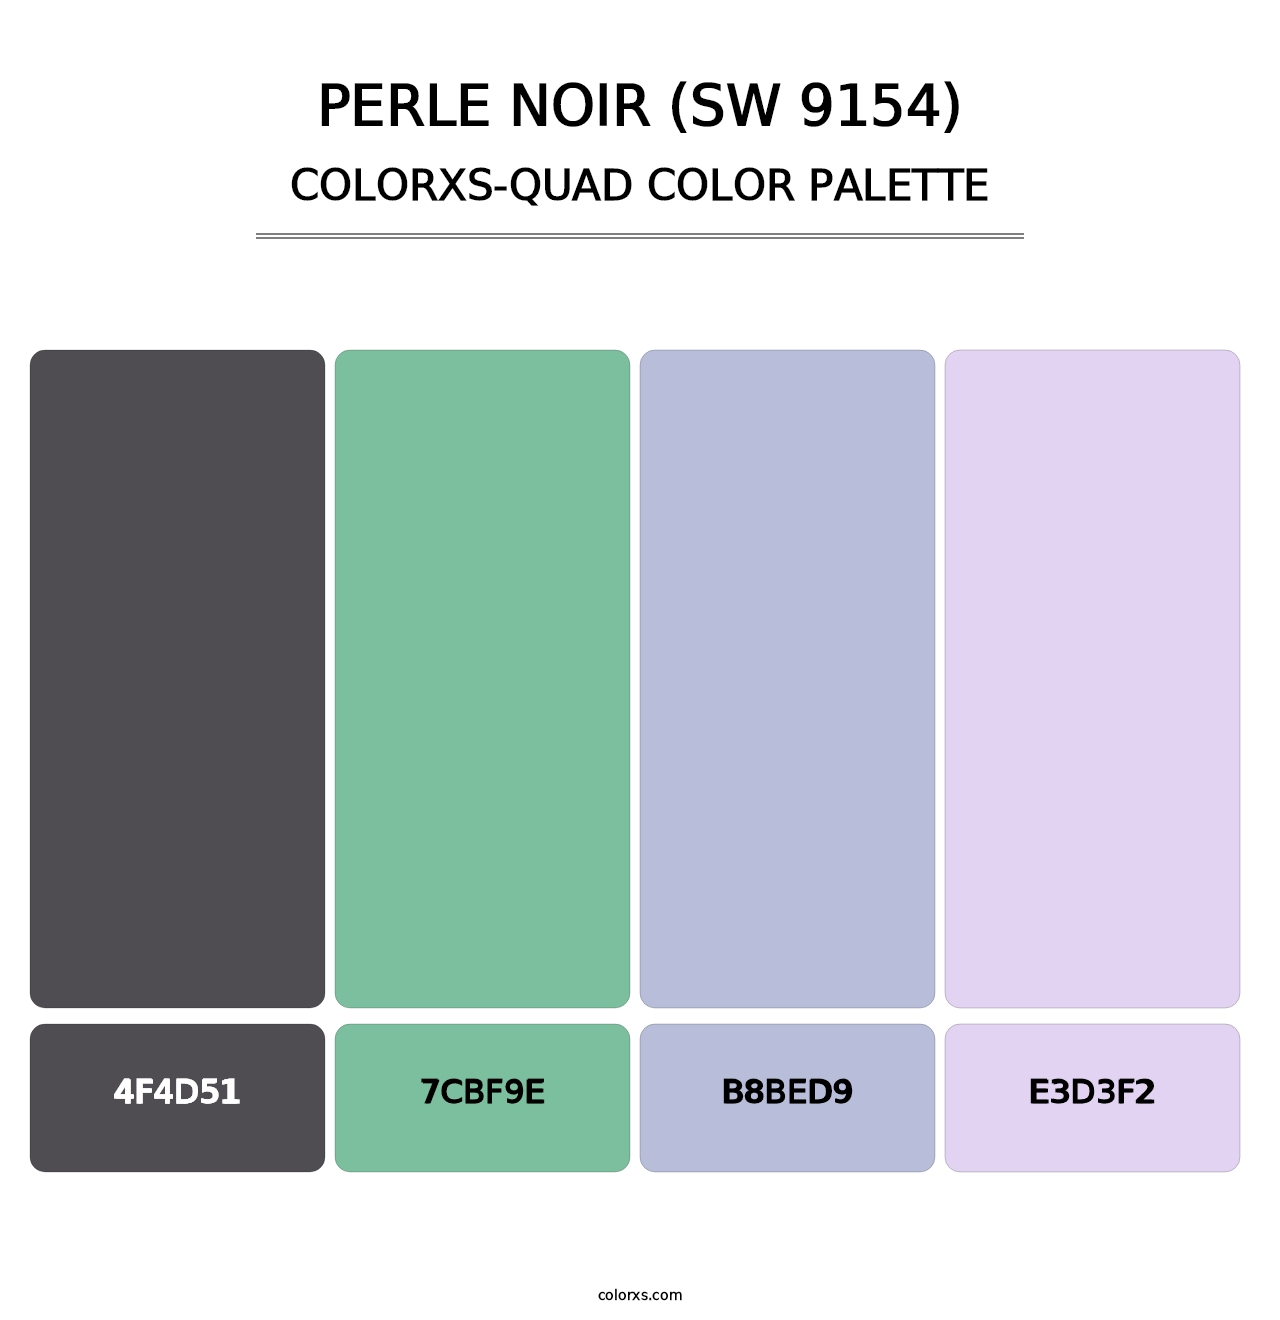 Perle Noir (SW 9154) - Colorxs Quad Palette